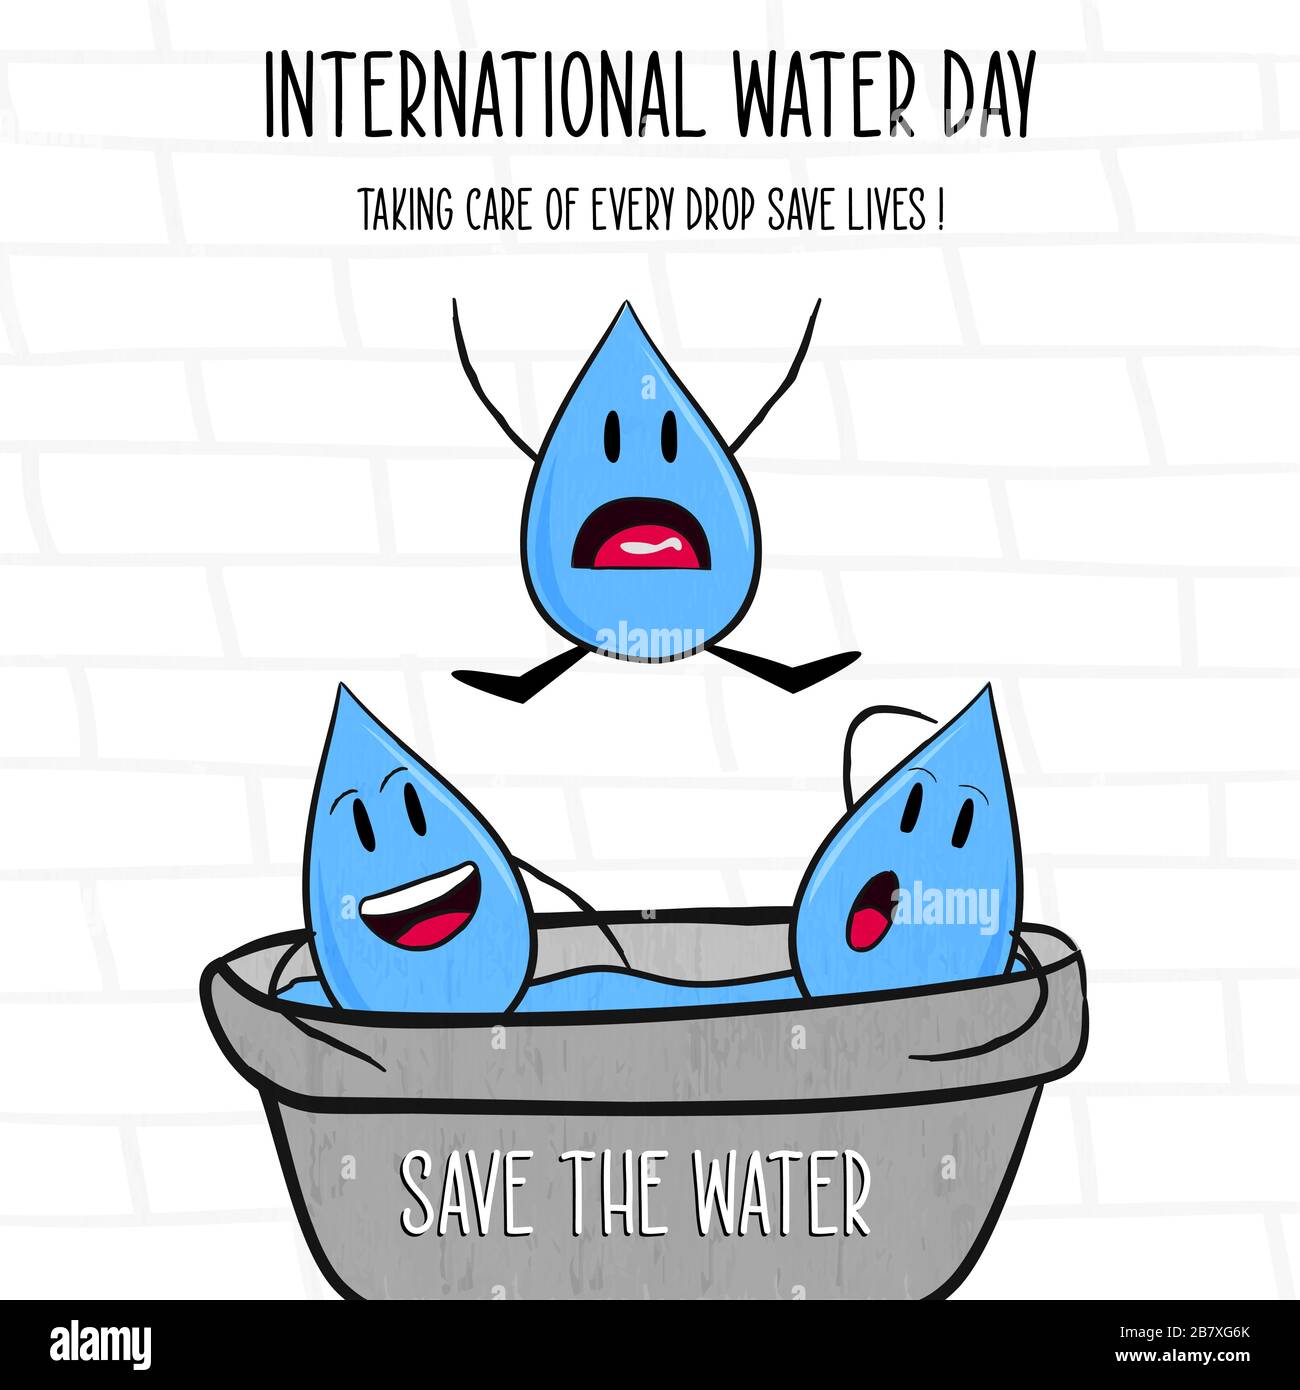 Internationaler Wasser-Tag-Unterricht Illustration von fröhlichen flüssigen Tropfenfiguren mit Save the Waters Textzitat für Naturhilfe Weltkampffeignis. Stock Vektor